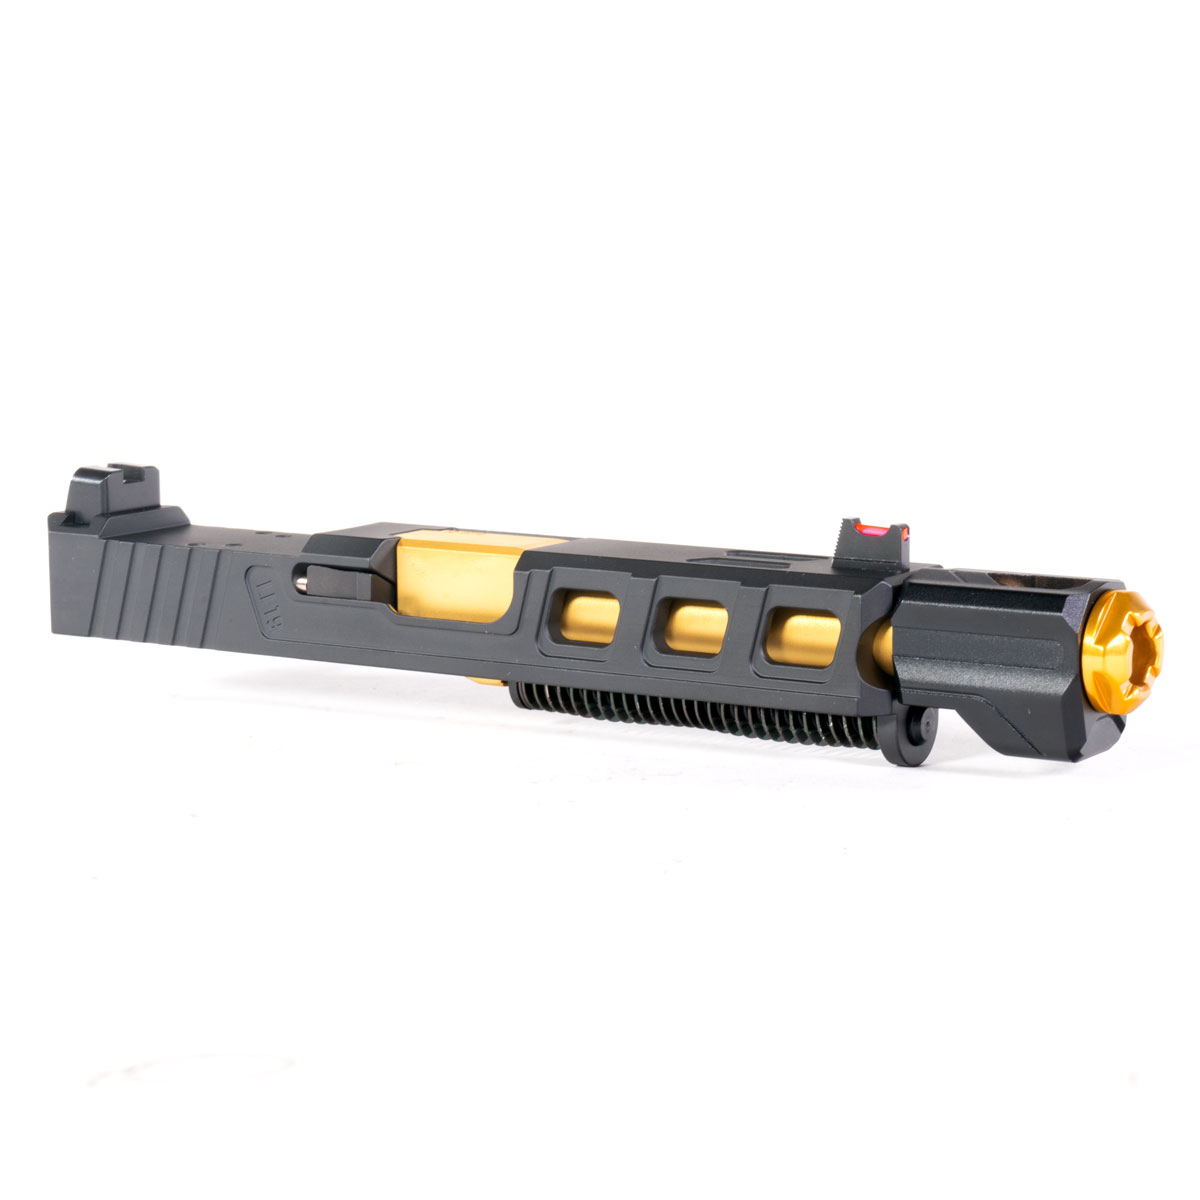 DDS 'Peng w/ Tyrant Designs Compensator' 9mm Complete Slide Kit - Glock 19 Gen 1-3 Compatible